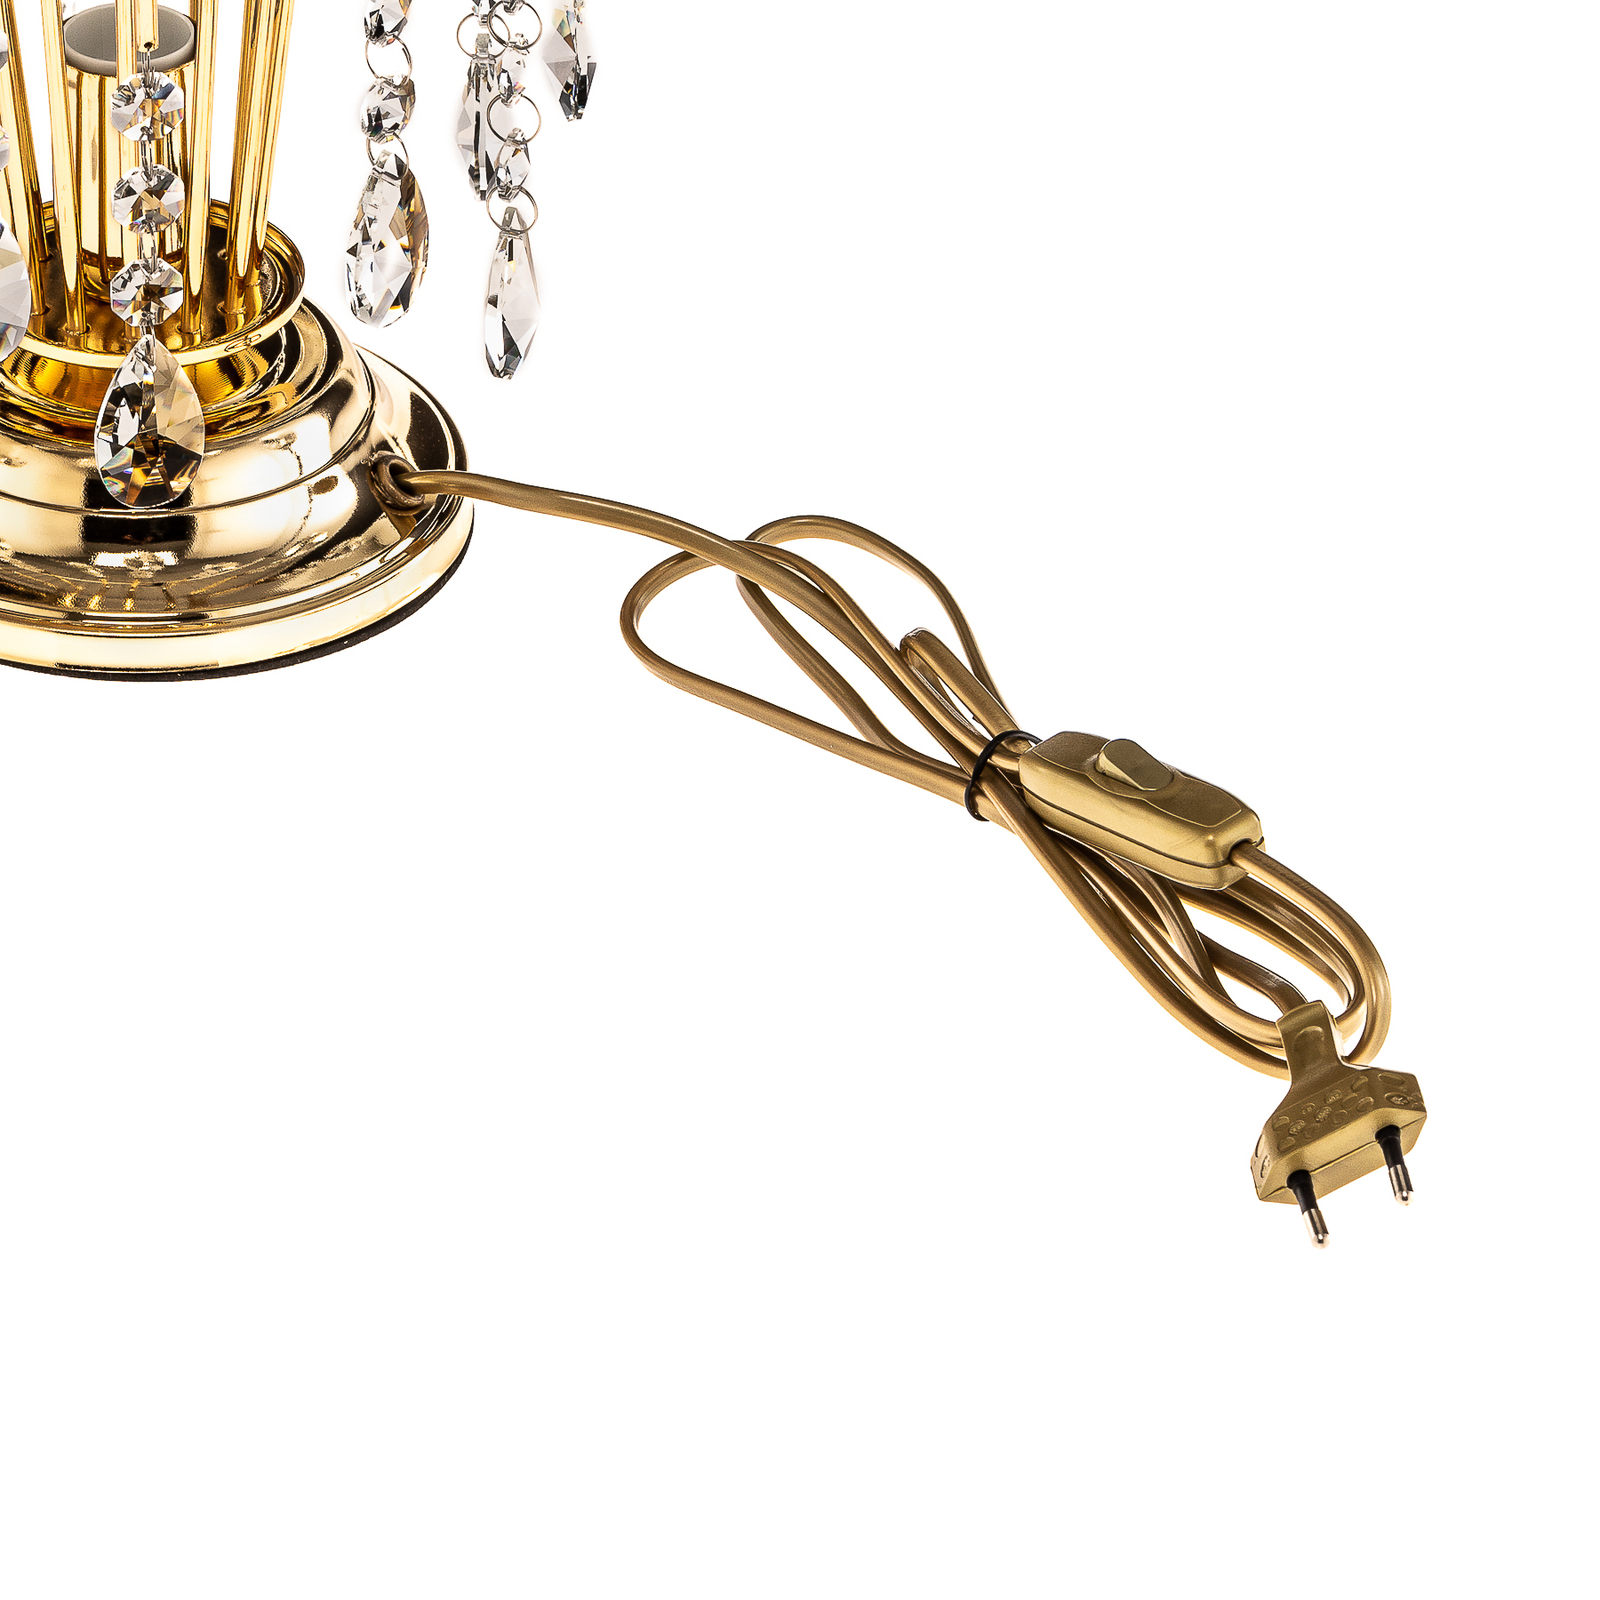 Pioggia bordlampe med krystallregn, 26 cm, gull